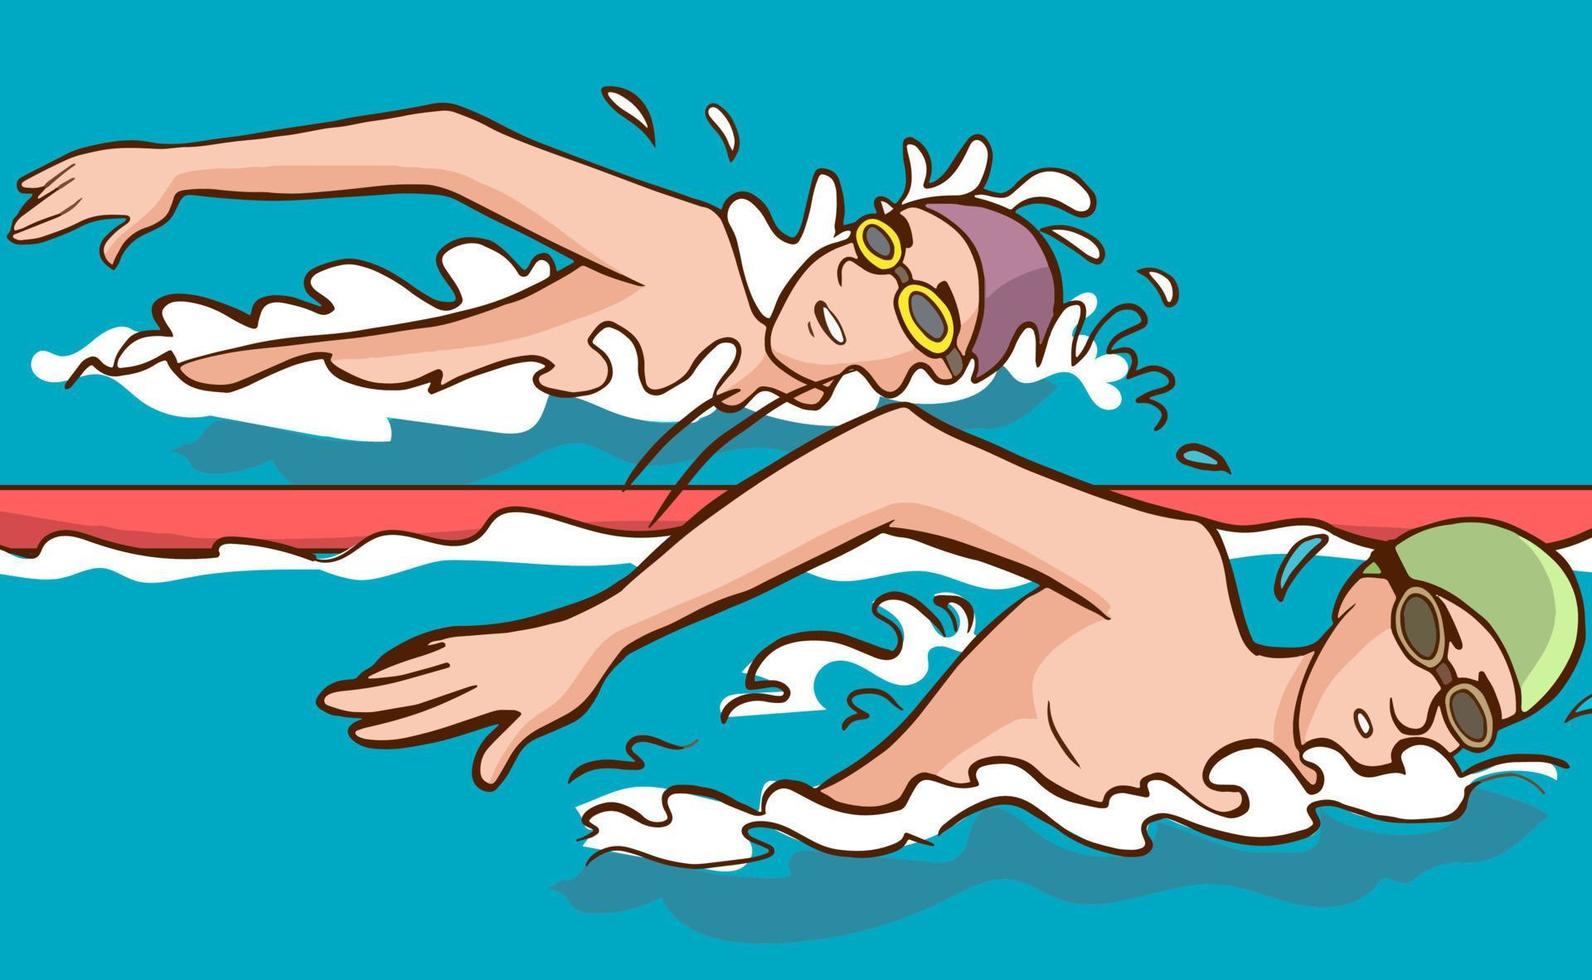 nuotatore nuoto nel piscina cartone animato vettore